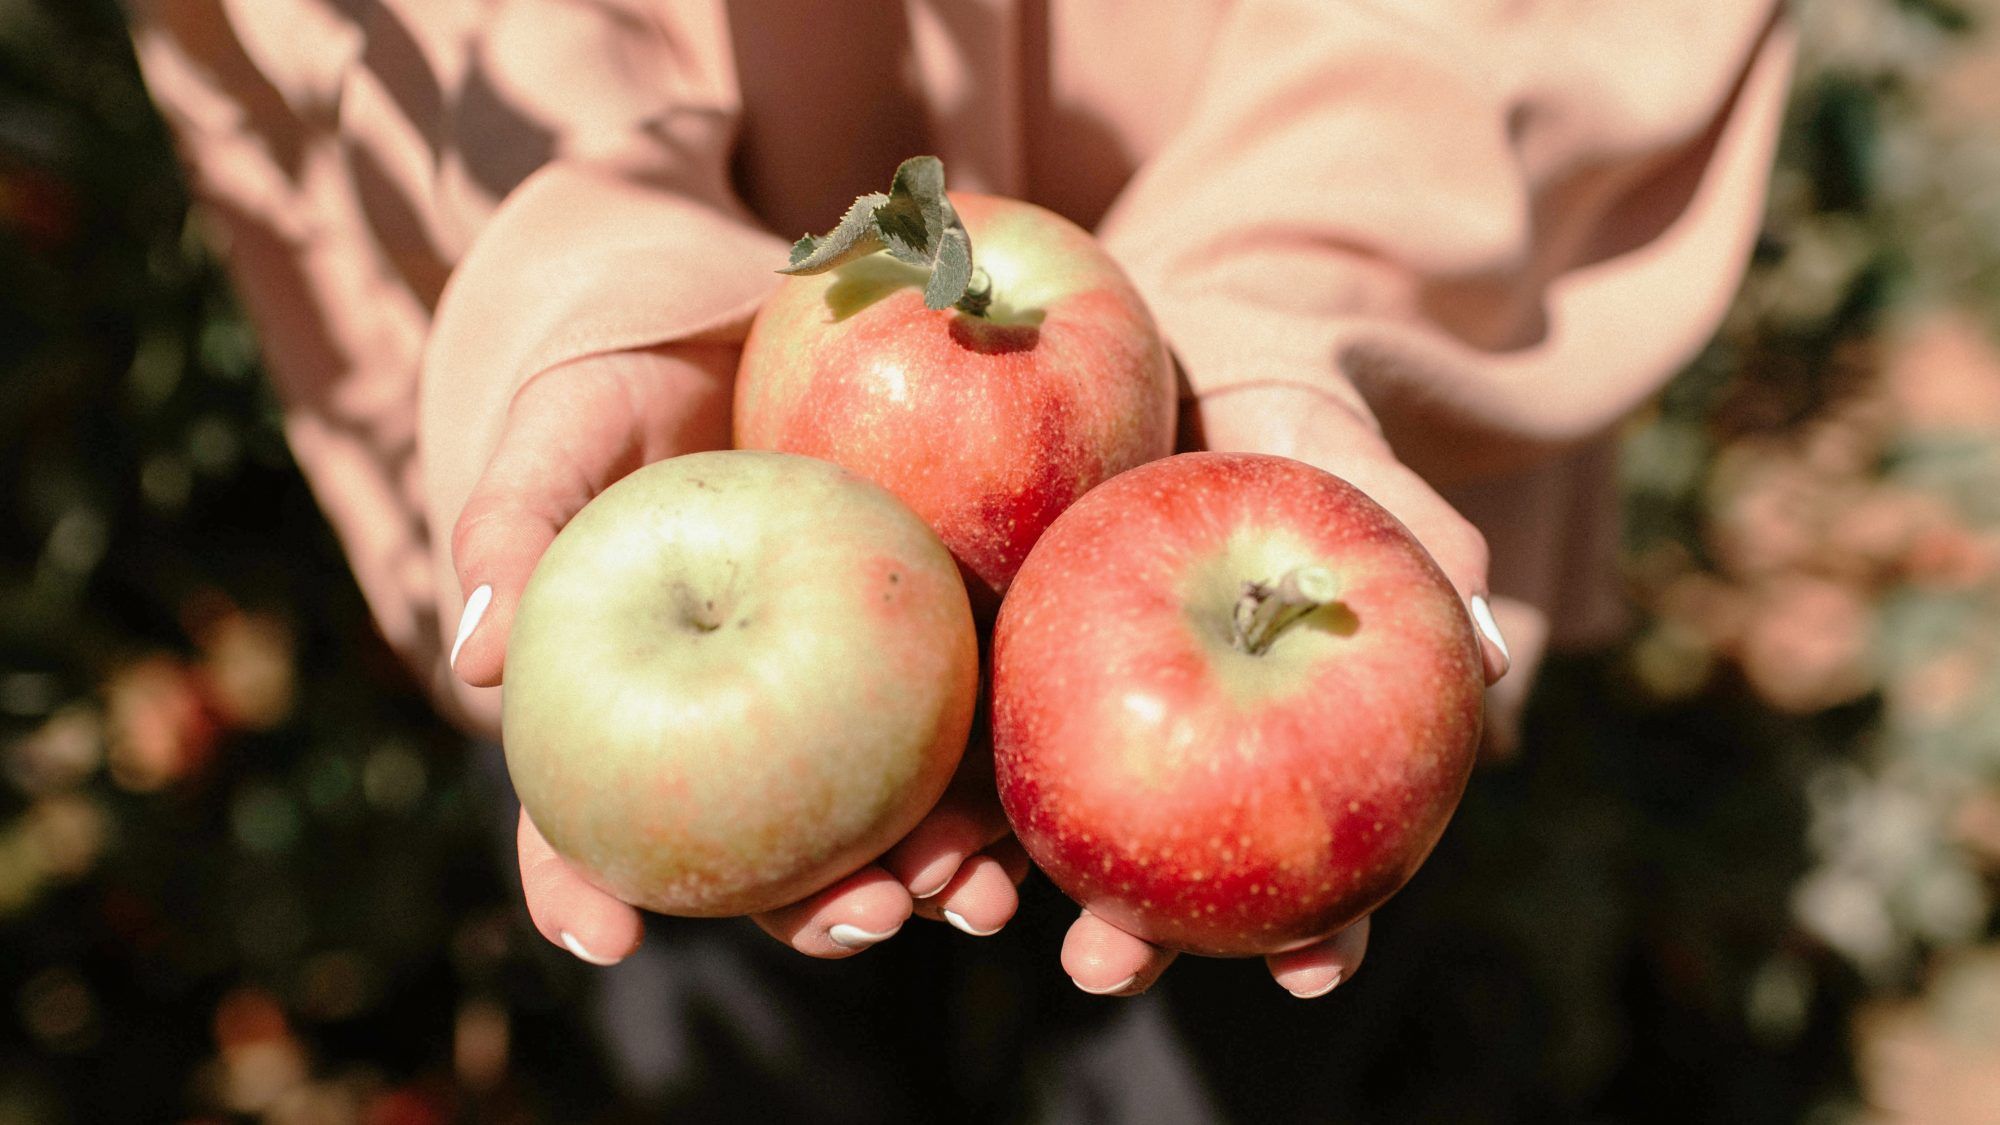 50 најбољих места за брање јабука у САД-у, према Иелп-у